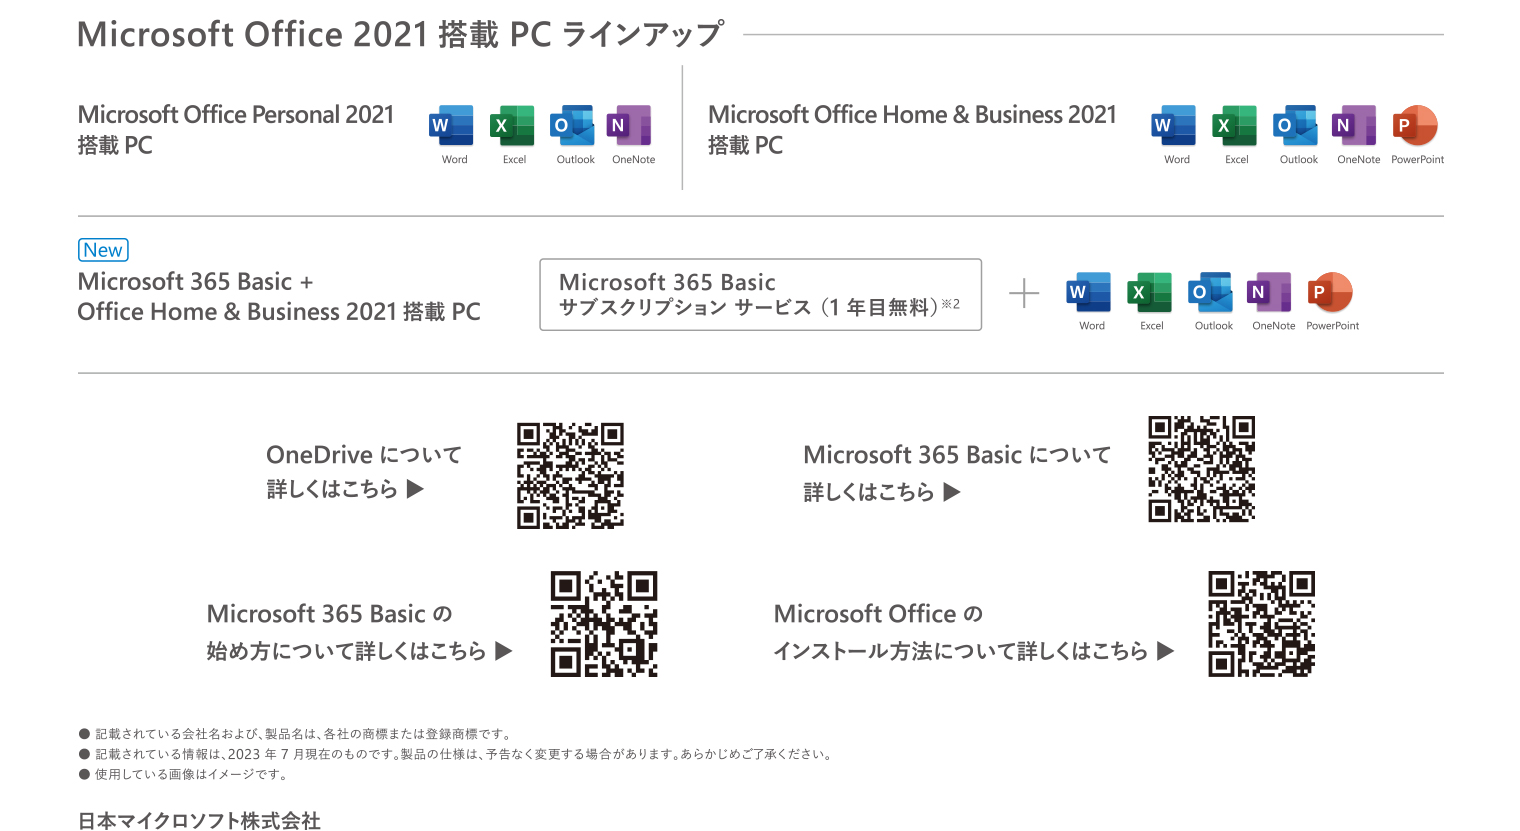 Microsoft Office 2021搭載PCラインアップ